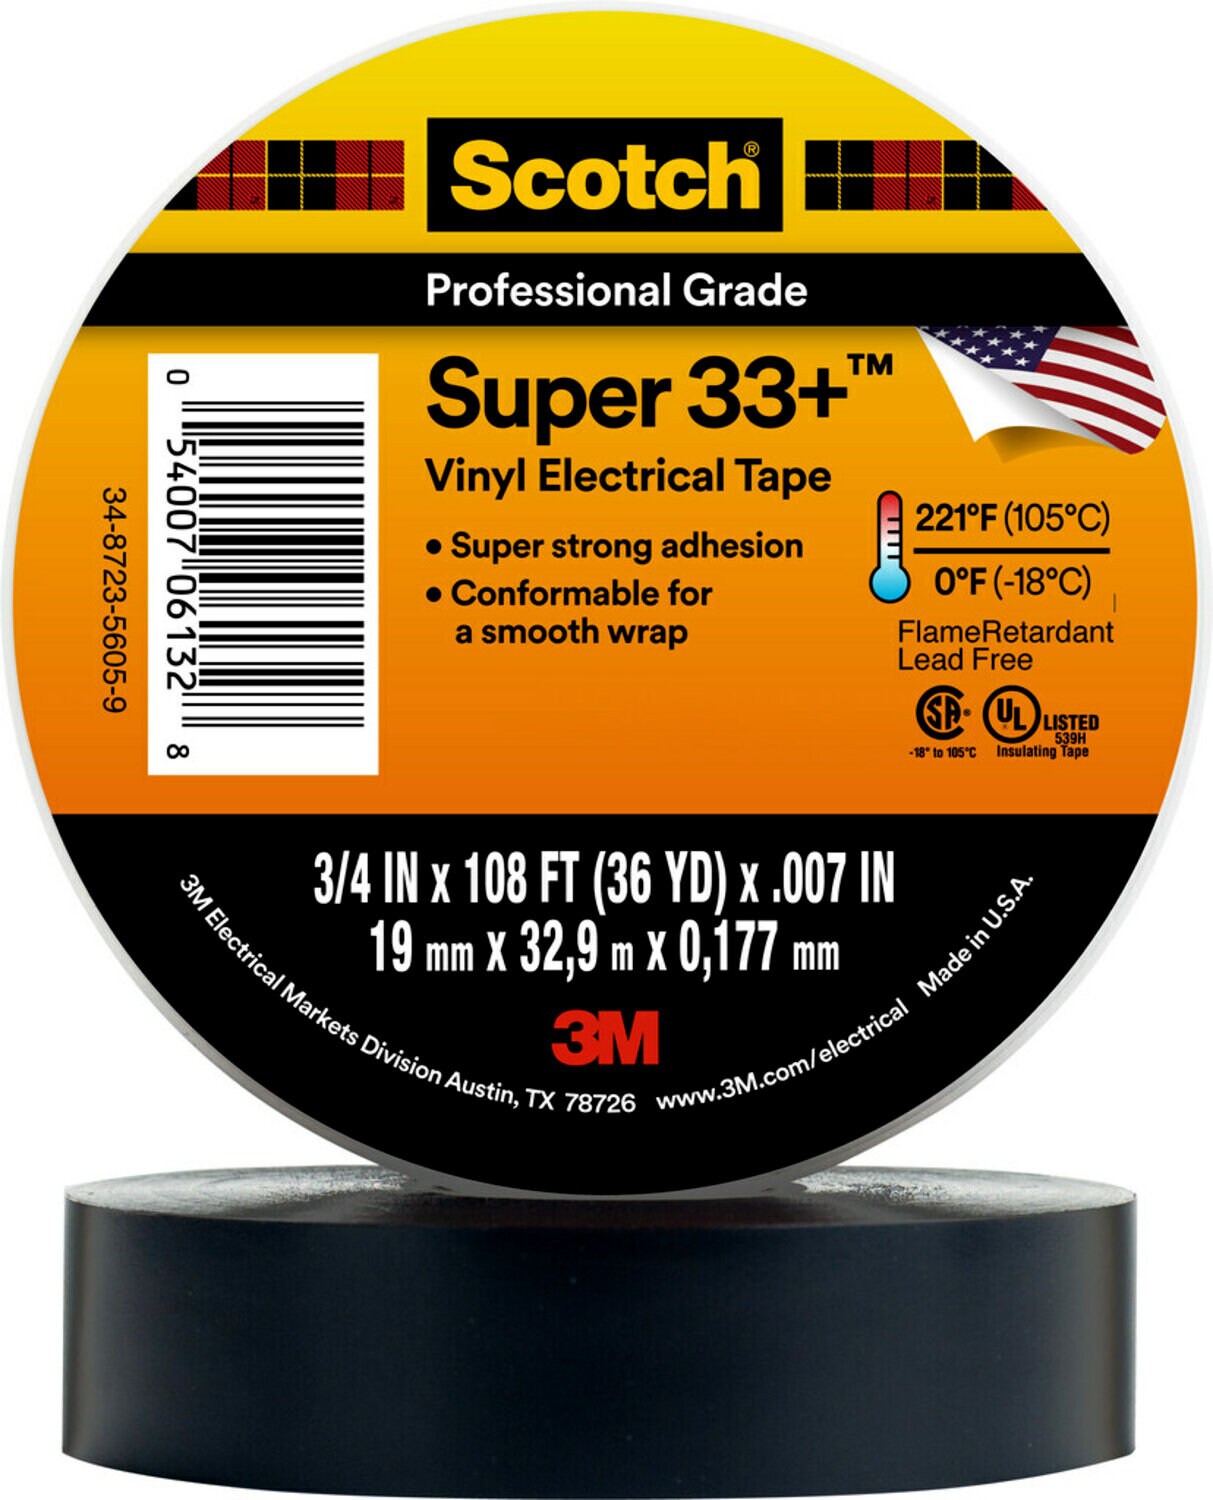 7000057831 - Scotch Super 33+ Vinyl Electrical Tape, 3/4 in x 36 yd, Black, 48
rolls/Case